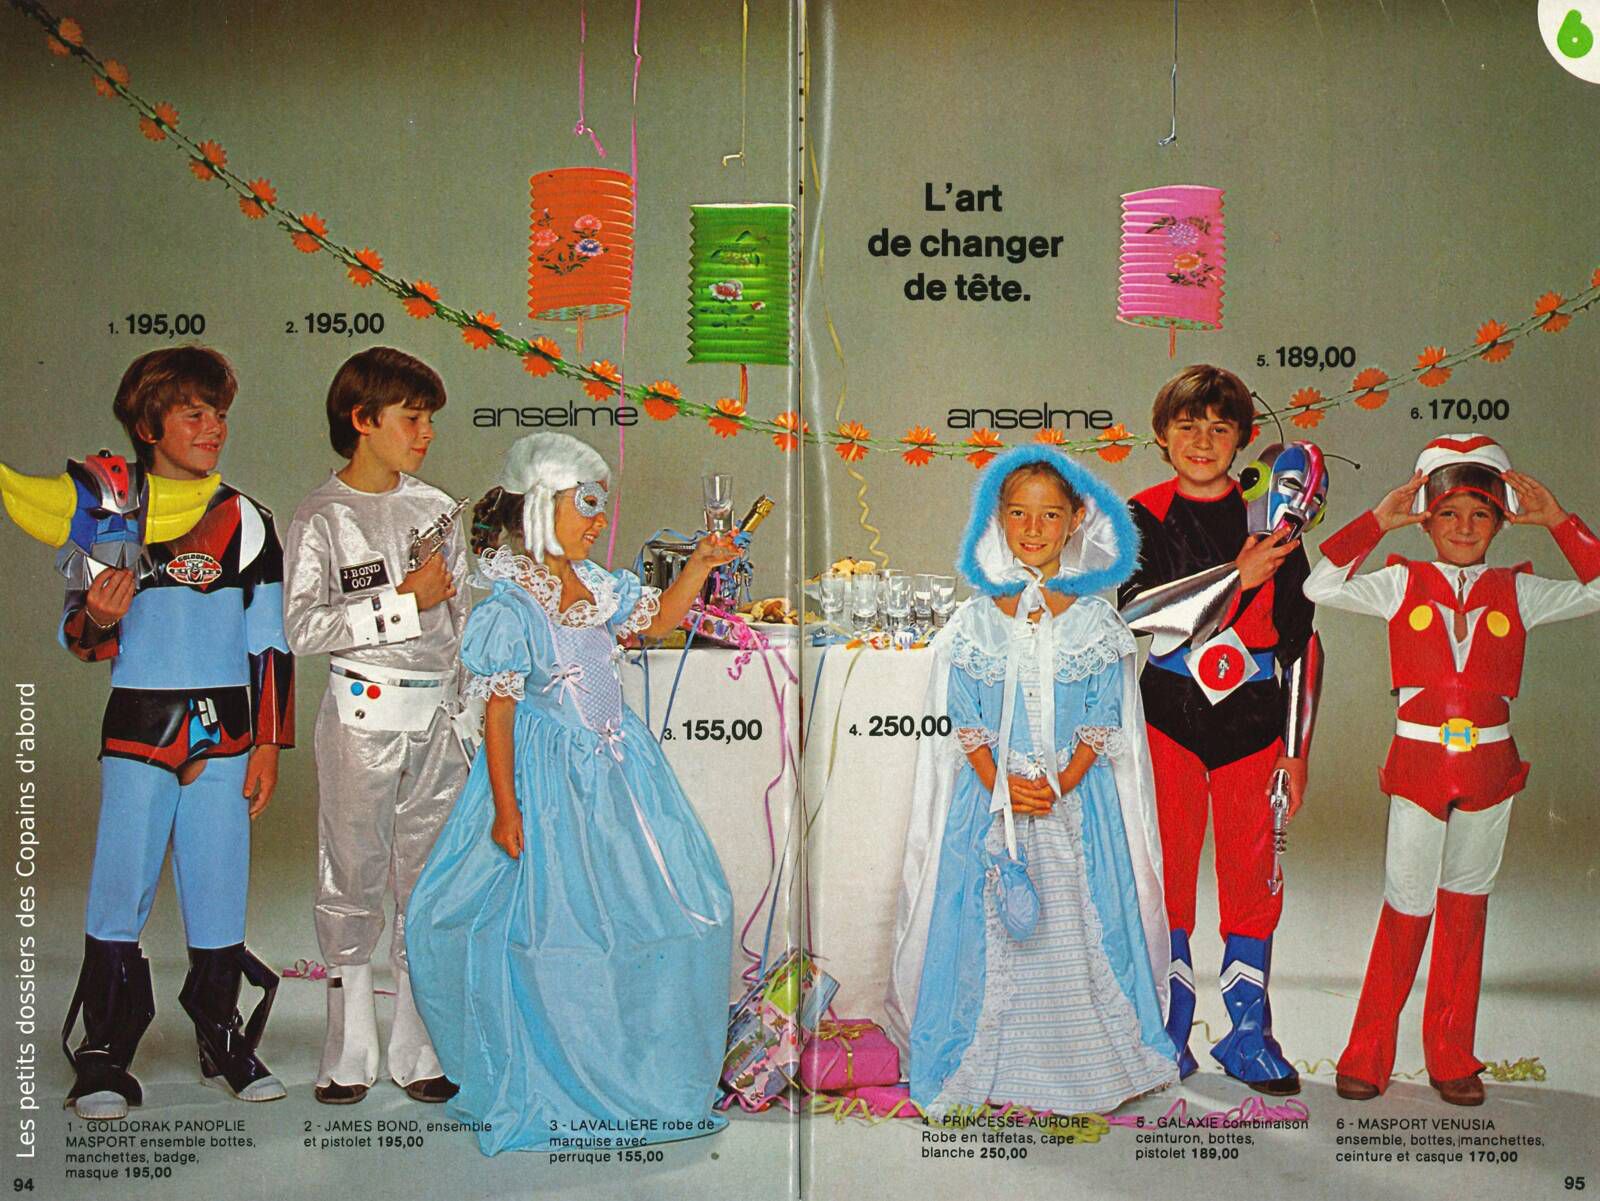 Les jouets du catalogue JouéClub 1979 par Nath-Didile - Les petits dossiers  des Copains d'abord